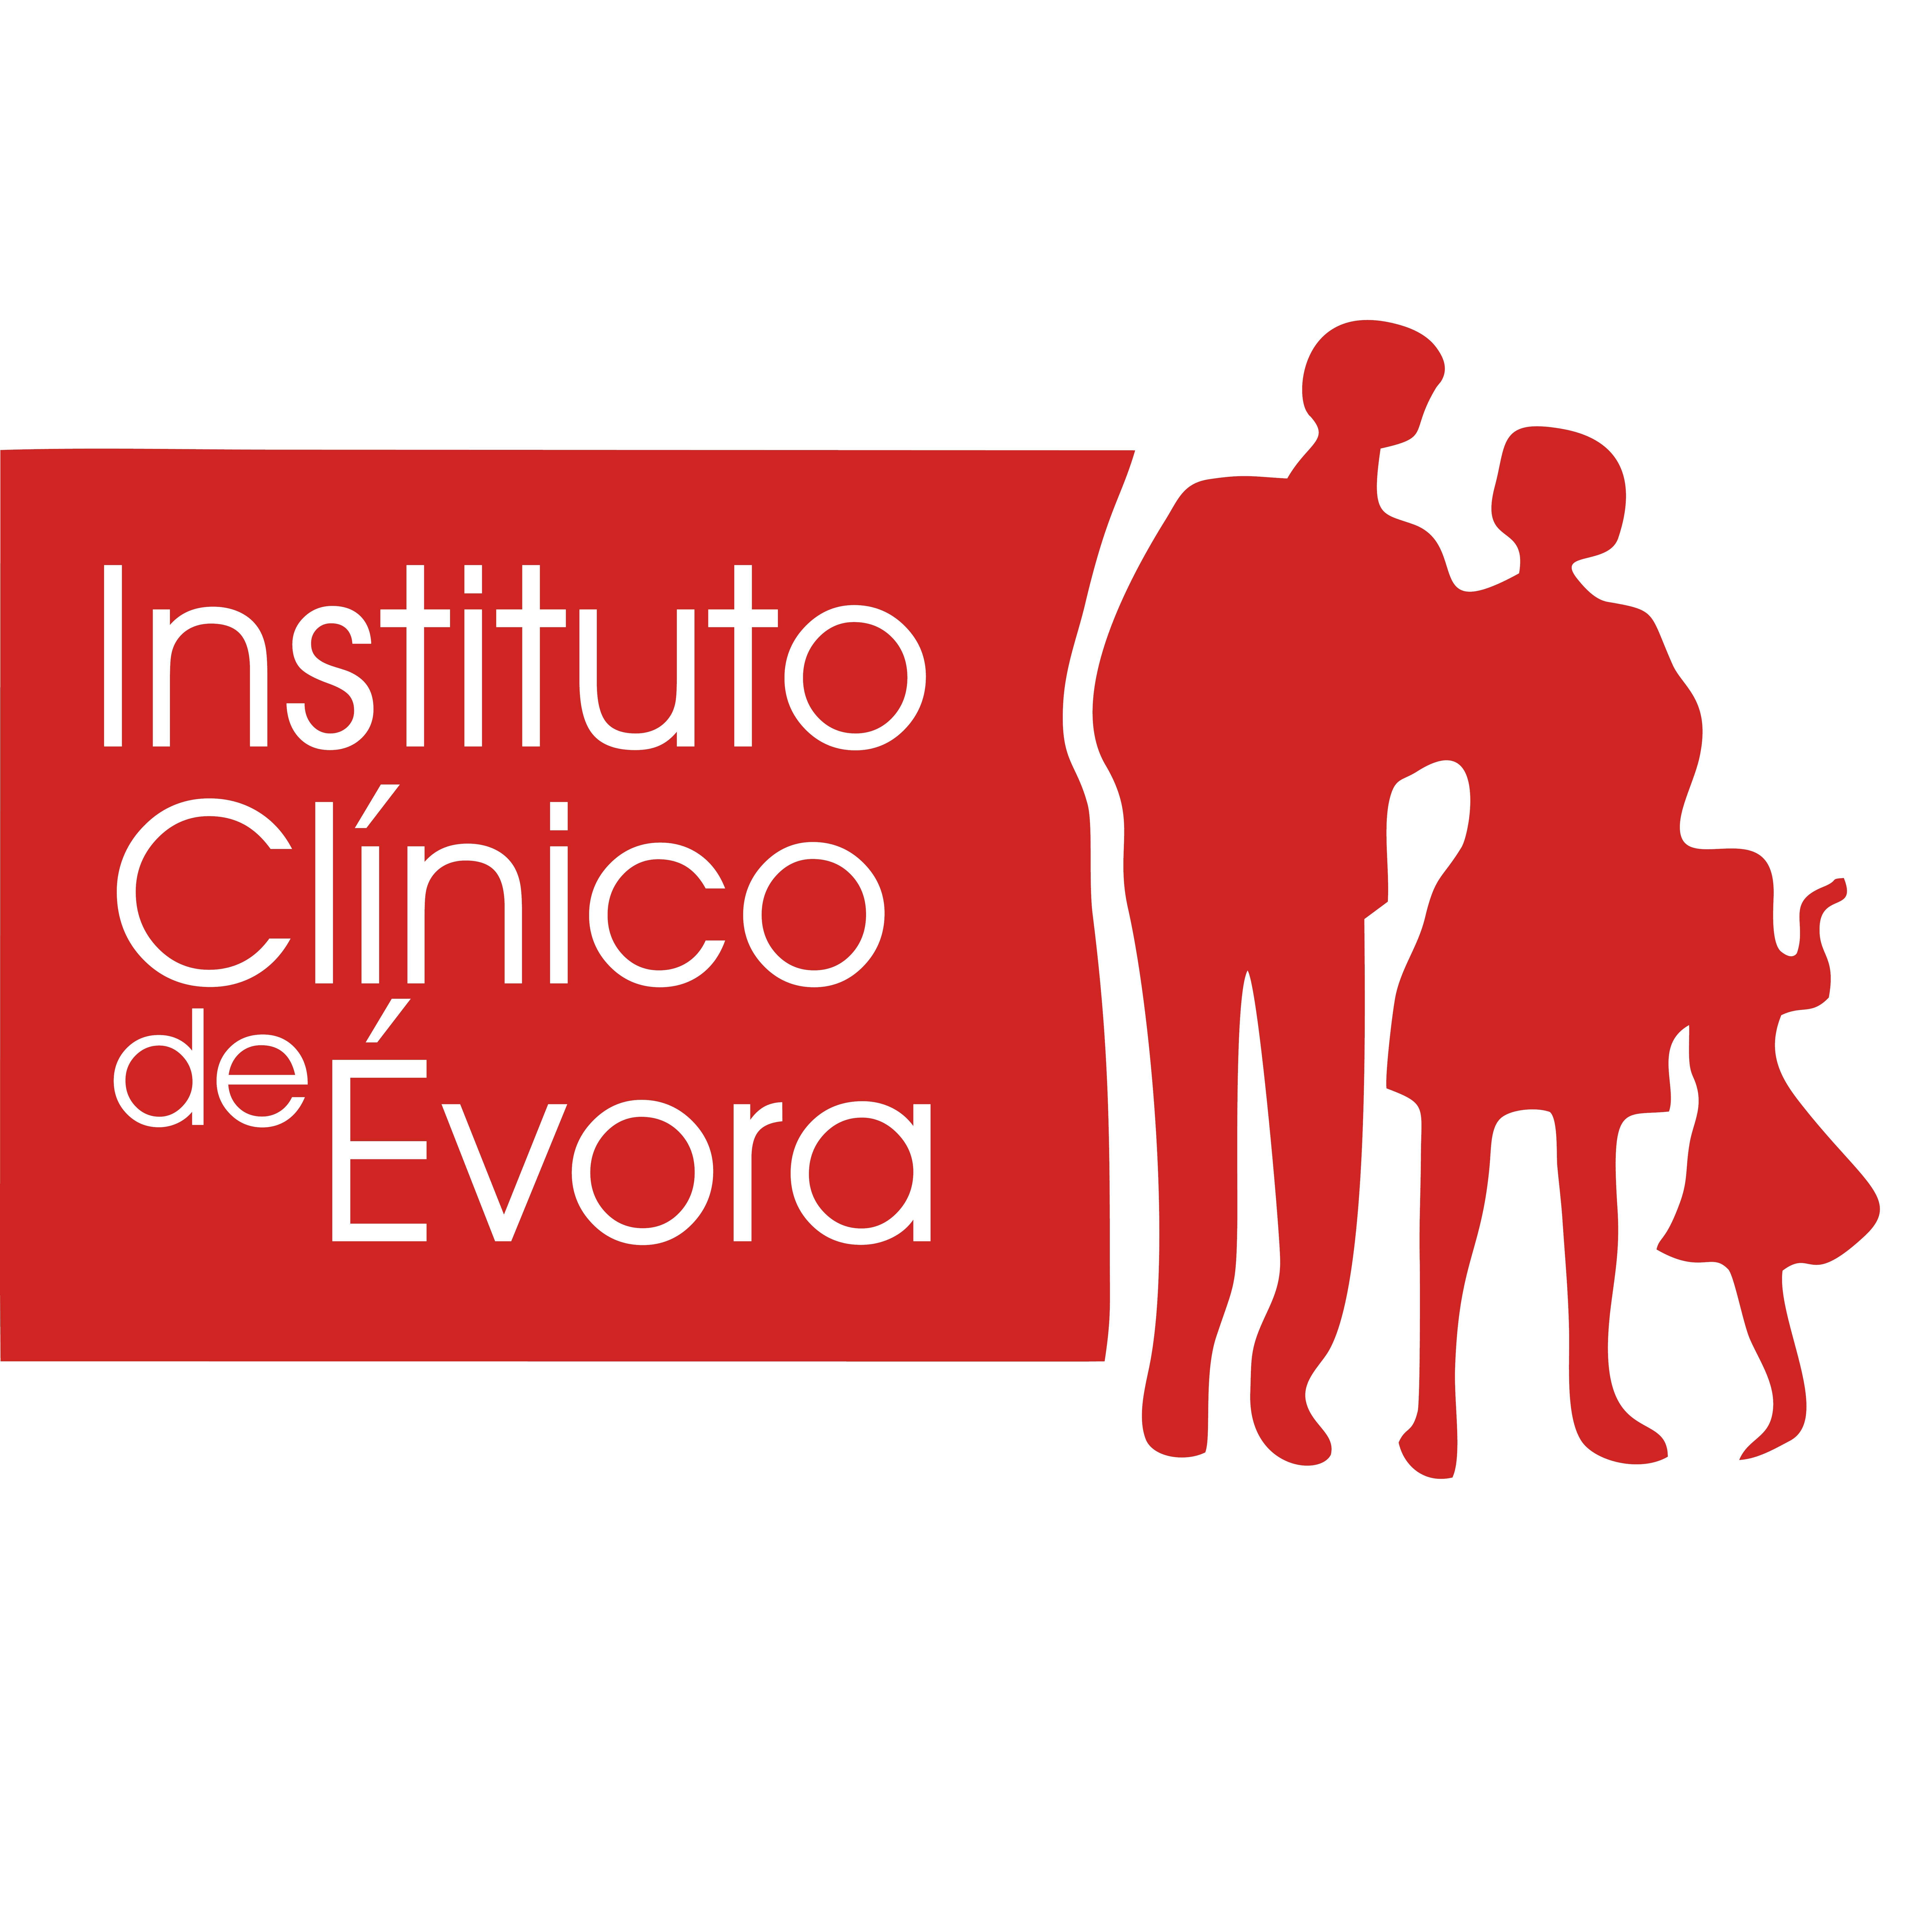 Instituto Clínico de Évora